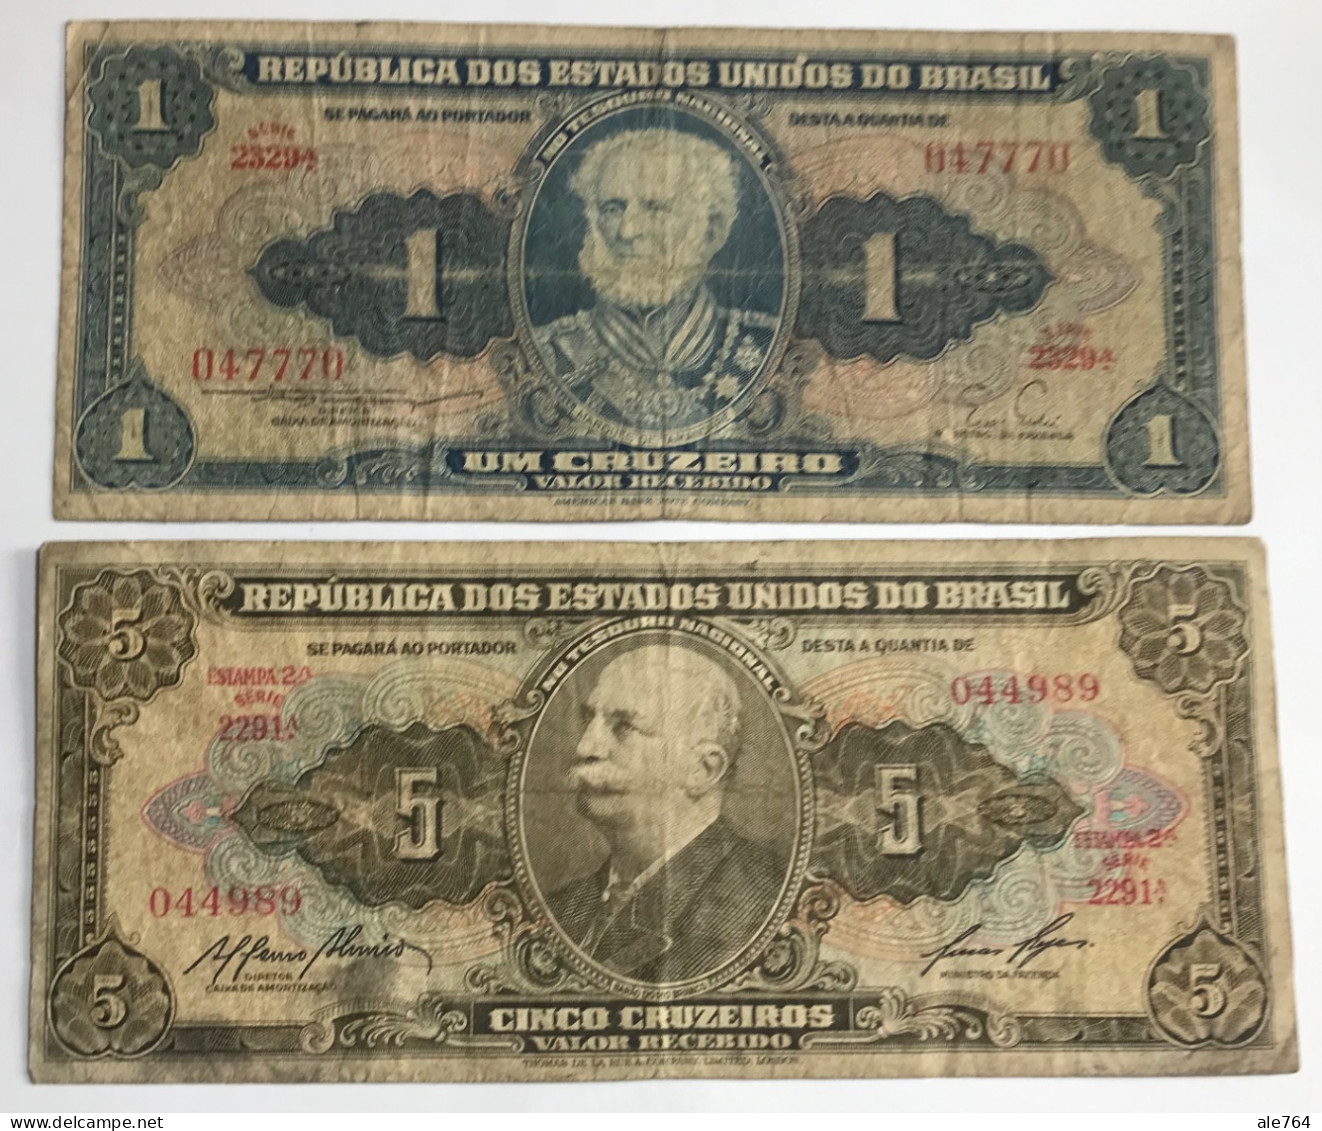 Brasil Banknotes 1 Cruzeiro,1955 Serie 2329a, P150, 5,10,20 1958/9, Series 2291a,1505a,1304a, Segunda Estampa. - Brésil